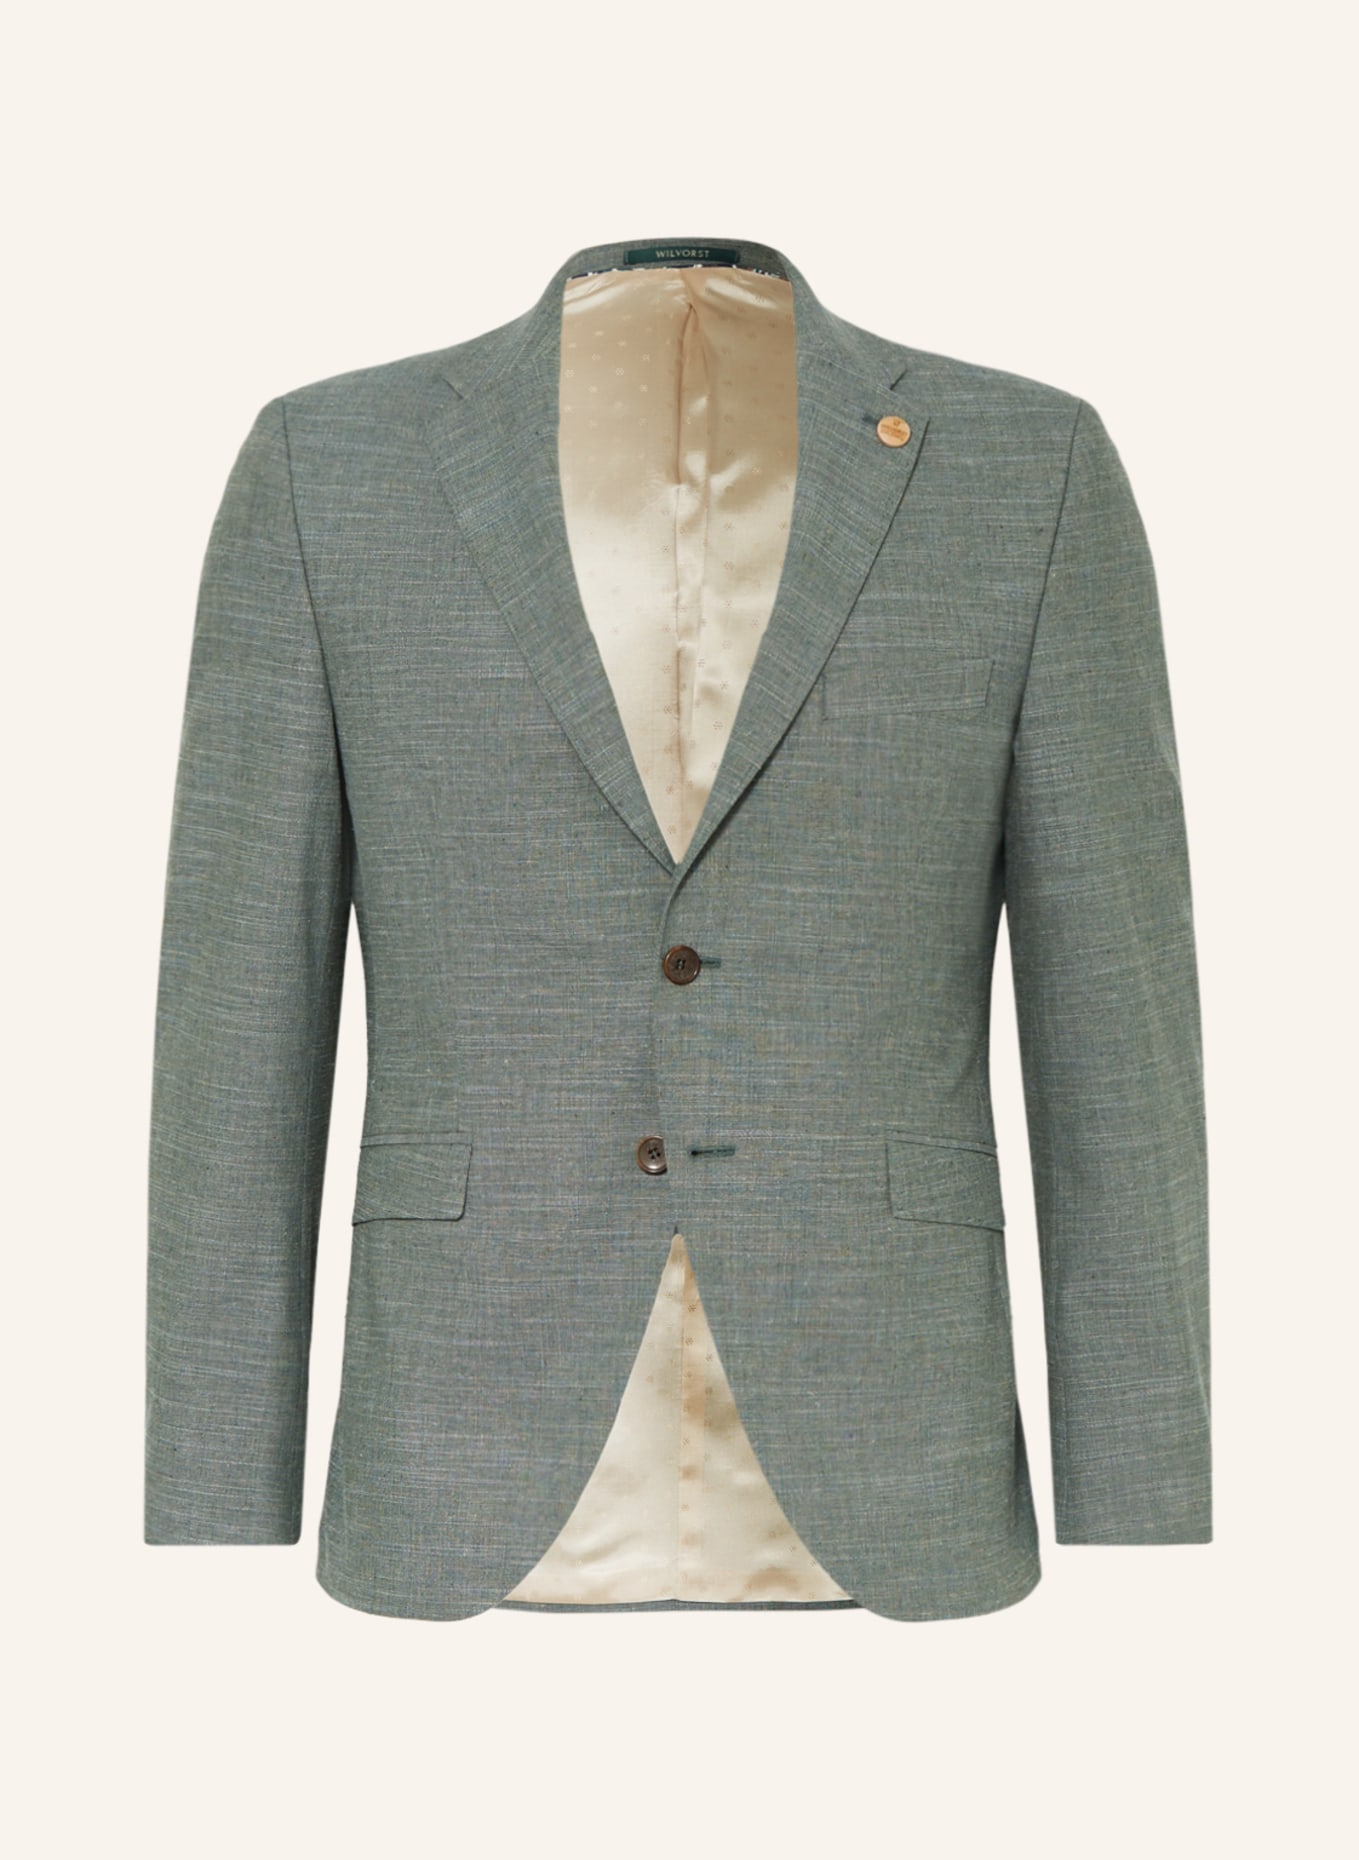 WILVORST Suit jacket extra slim fit, Color: 044 uni grün (Image 1)